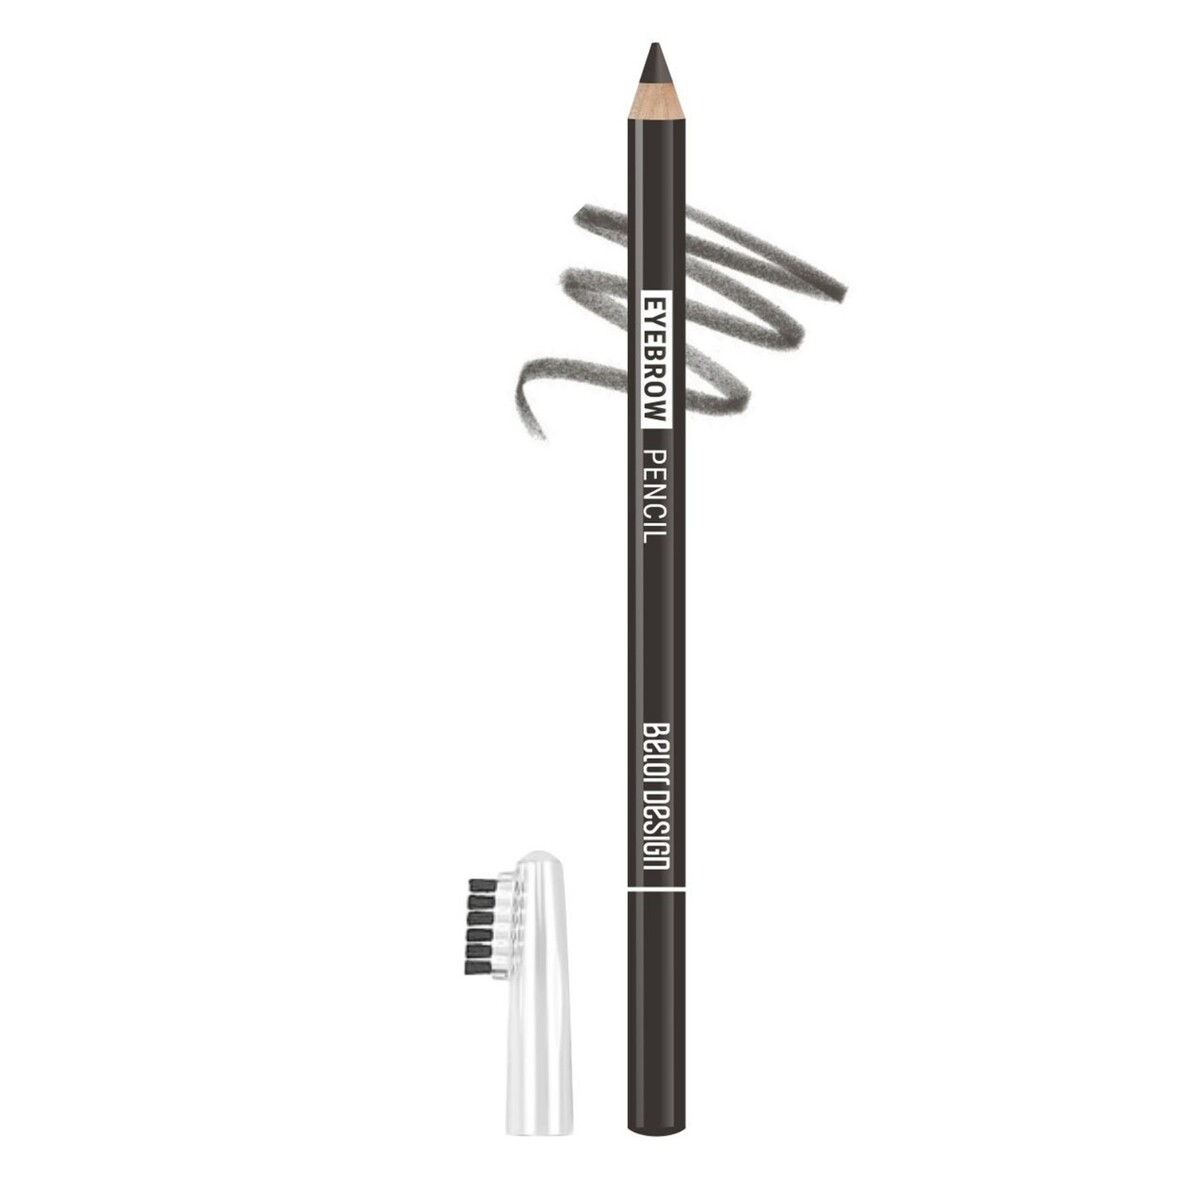 Карандаш косметический контурный party для бровей тон №102 темно-серый new 1.3г карандаш контурный для бровей lilo тон